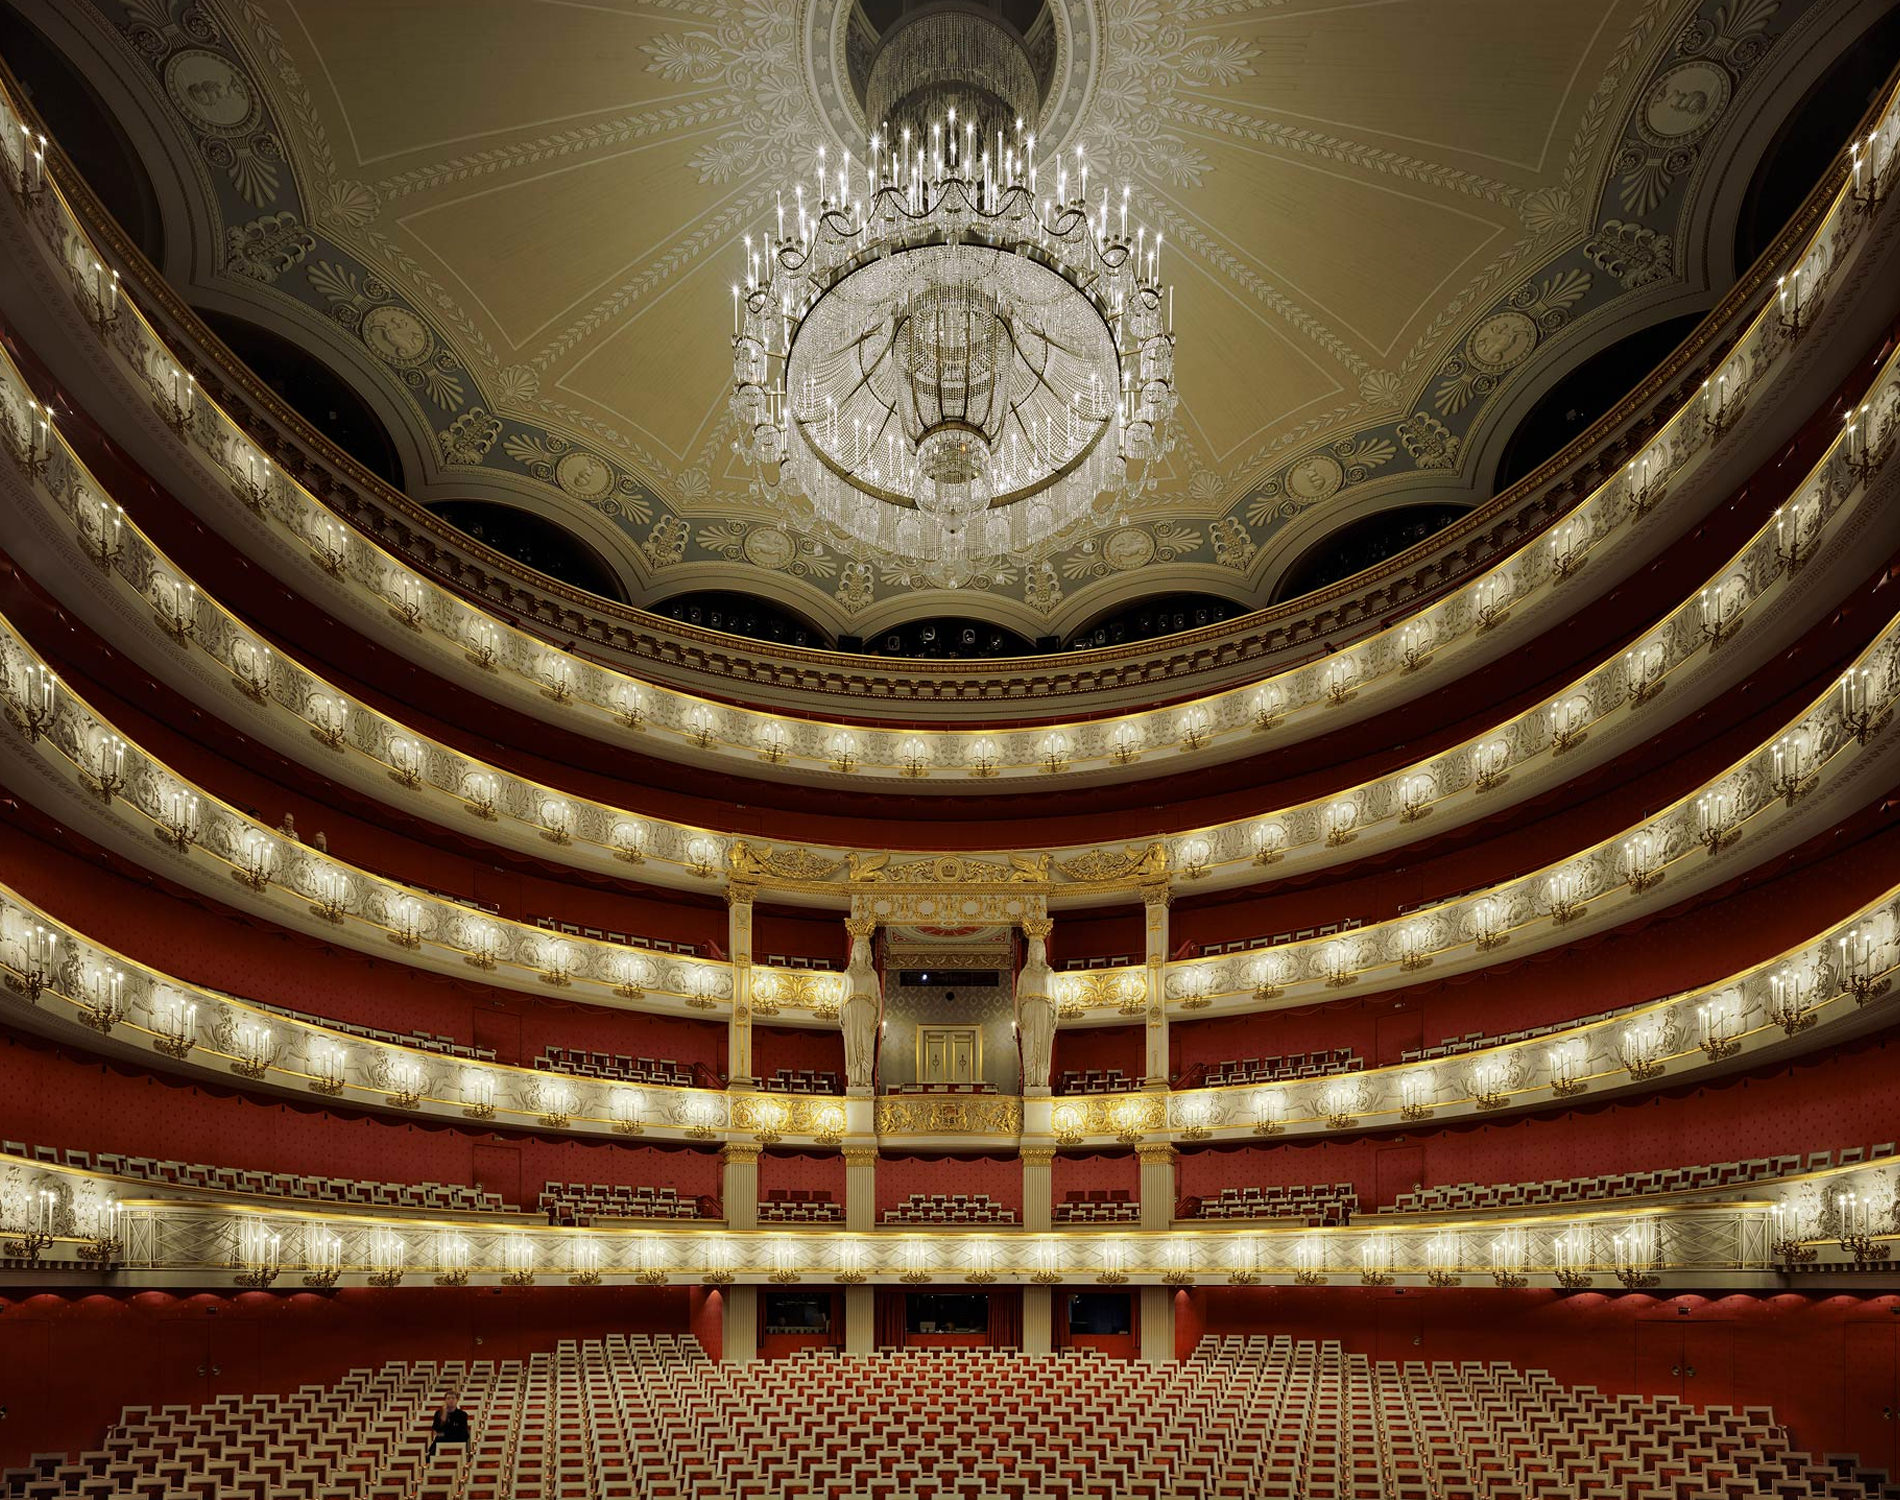 David Leventi Serie Photographie Opera Bayerische Staatsoper Munich Allemagne 2009